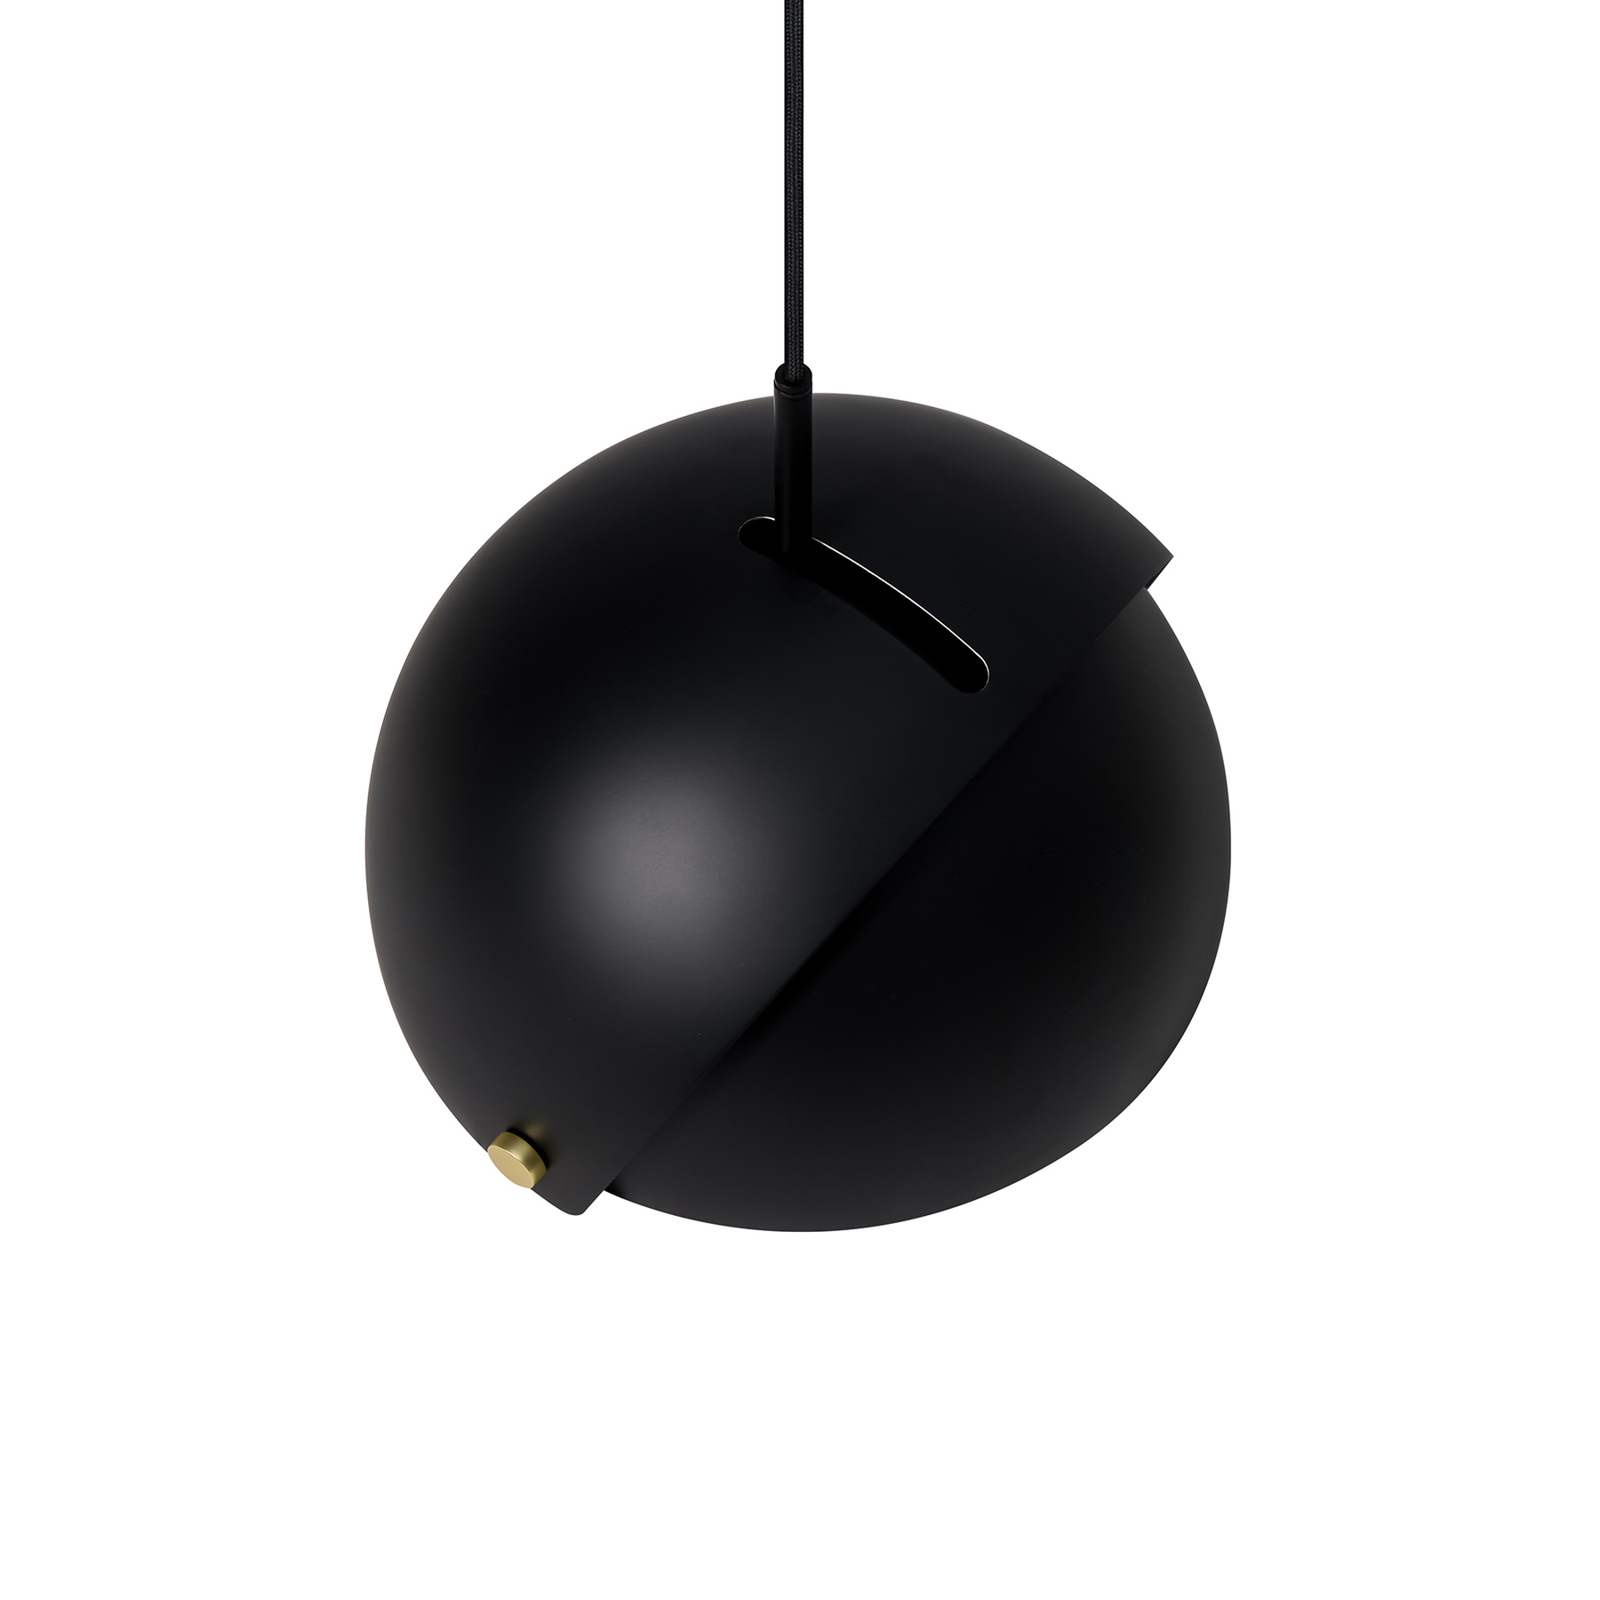 Hanglamp Align met beweegbare kap, zwart